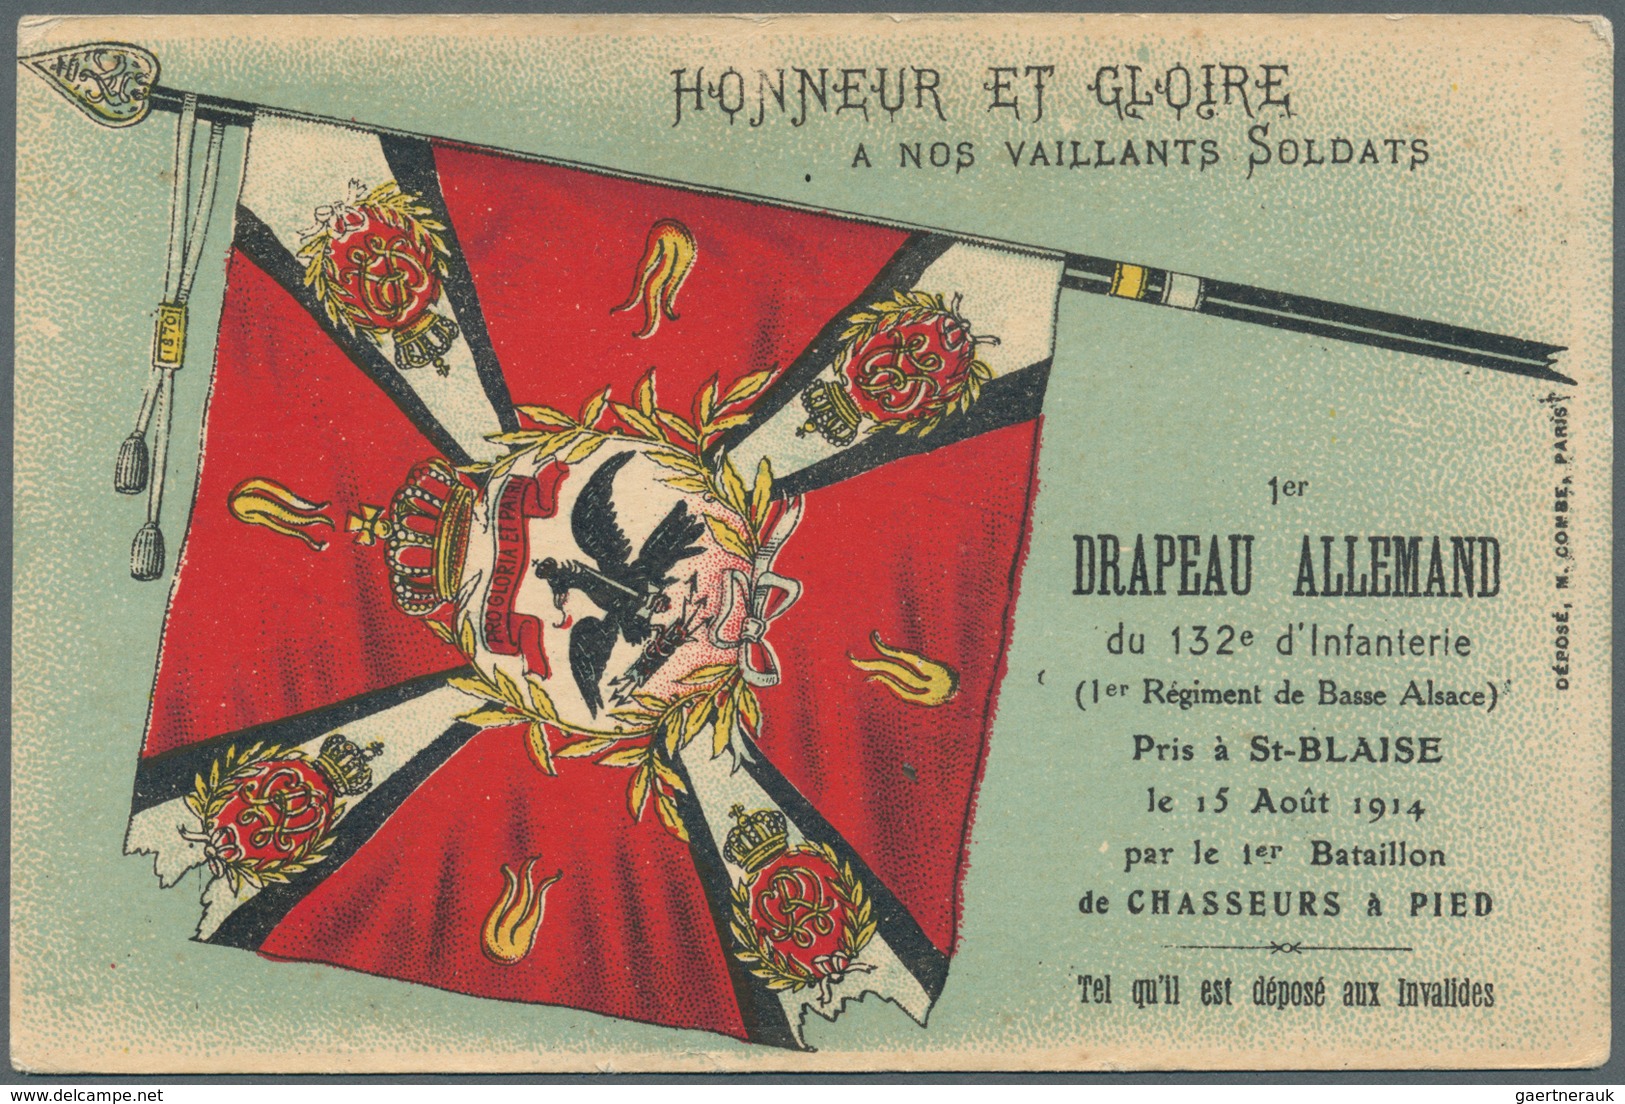 Ansichtskarten: Motive / Thematics: 1. WELTKRIEG / Flaggen, französische Sammlung "Au Drapeau" (Die